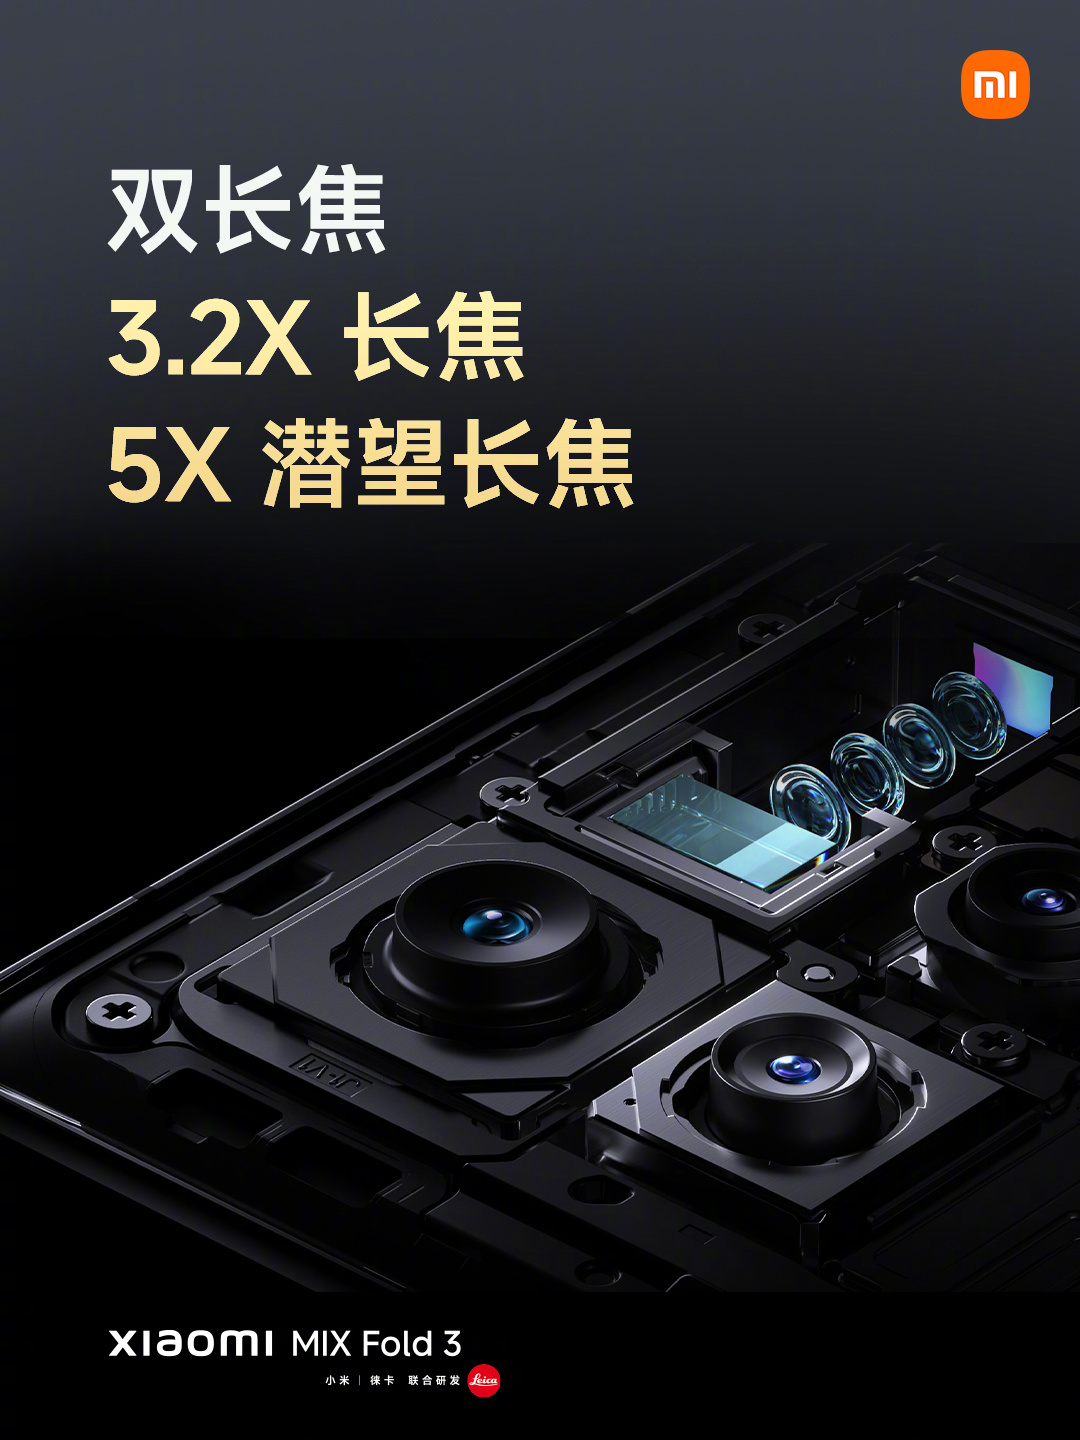 第二代驍龍8領先版、徠卡全焦段四攝、龍骨轉軸：小米 Mix Fold 3 正式發布！ 14